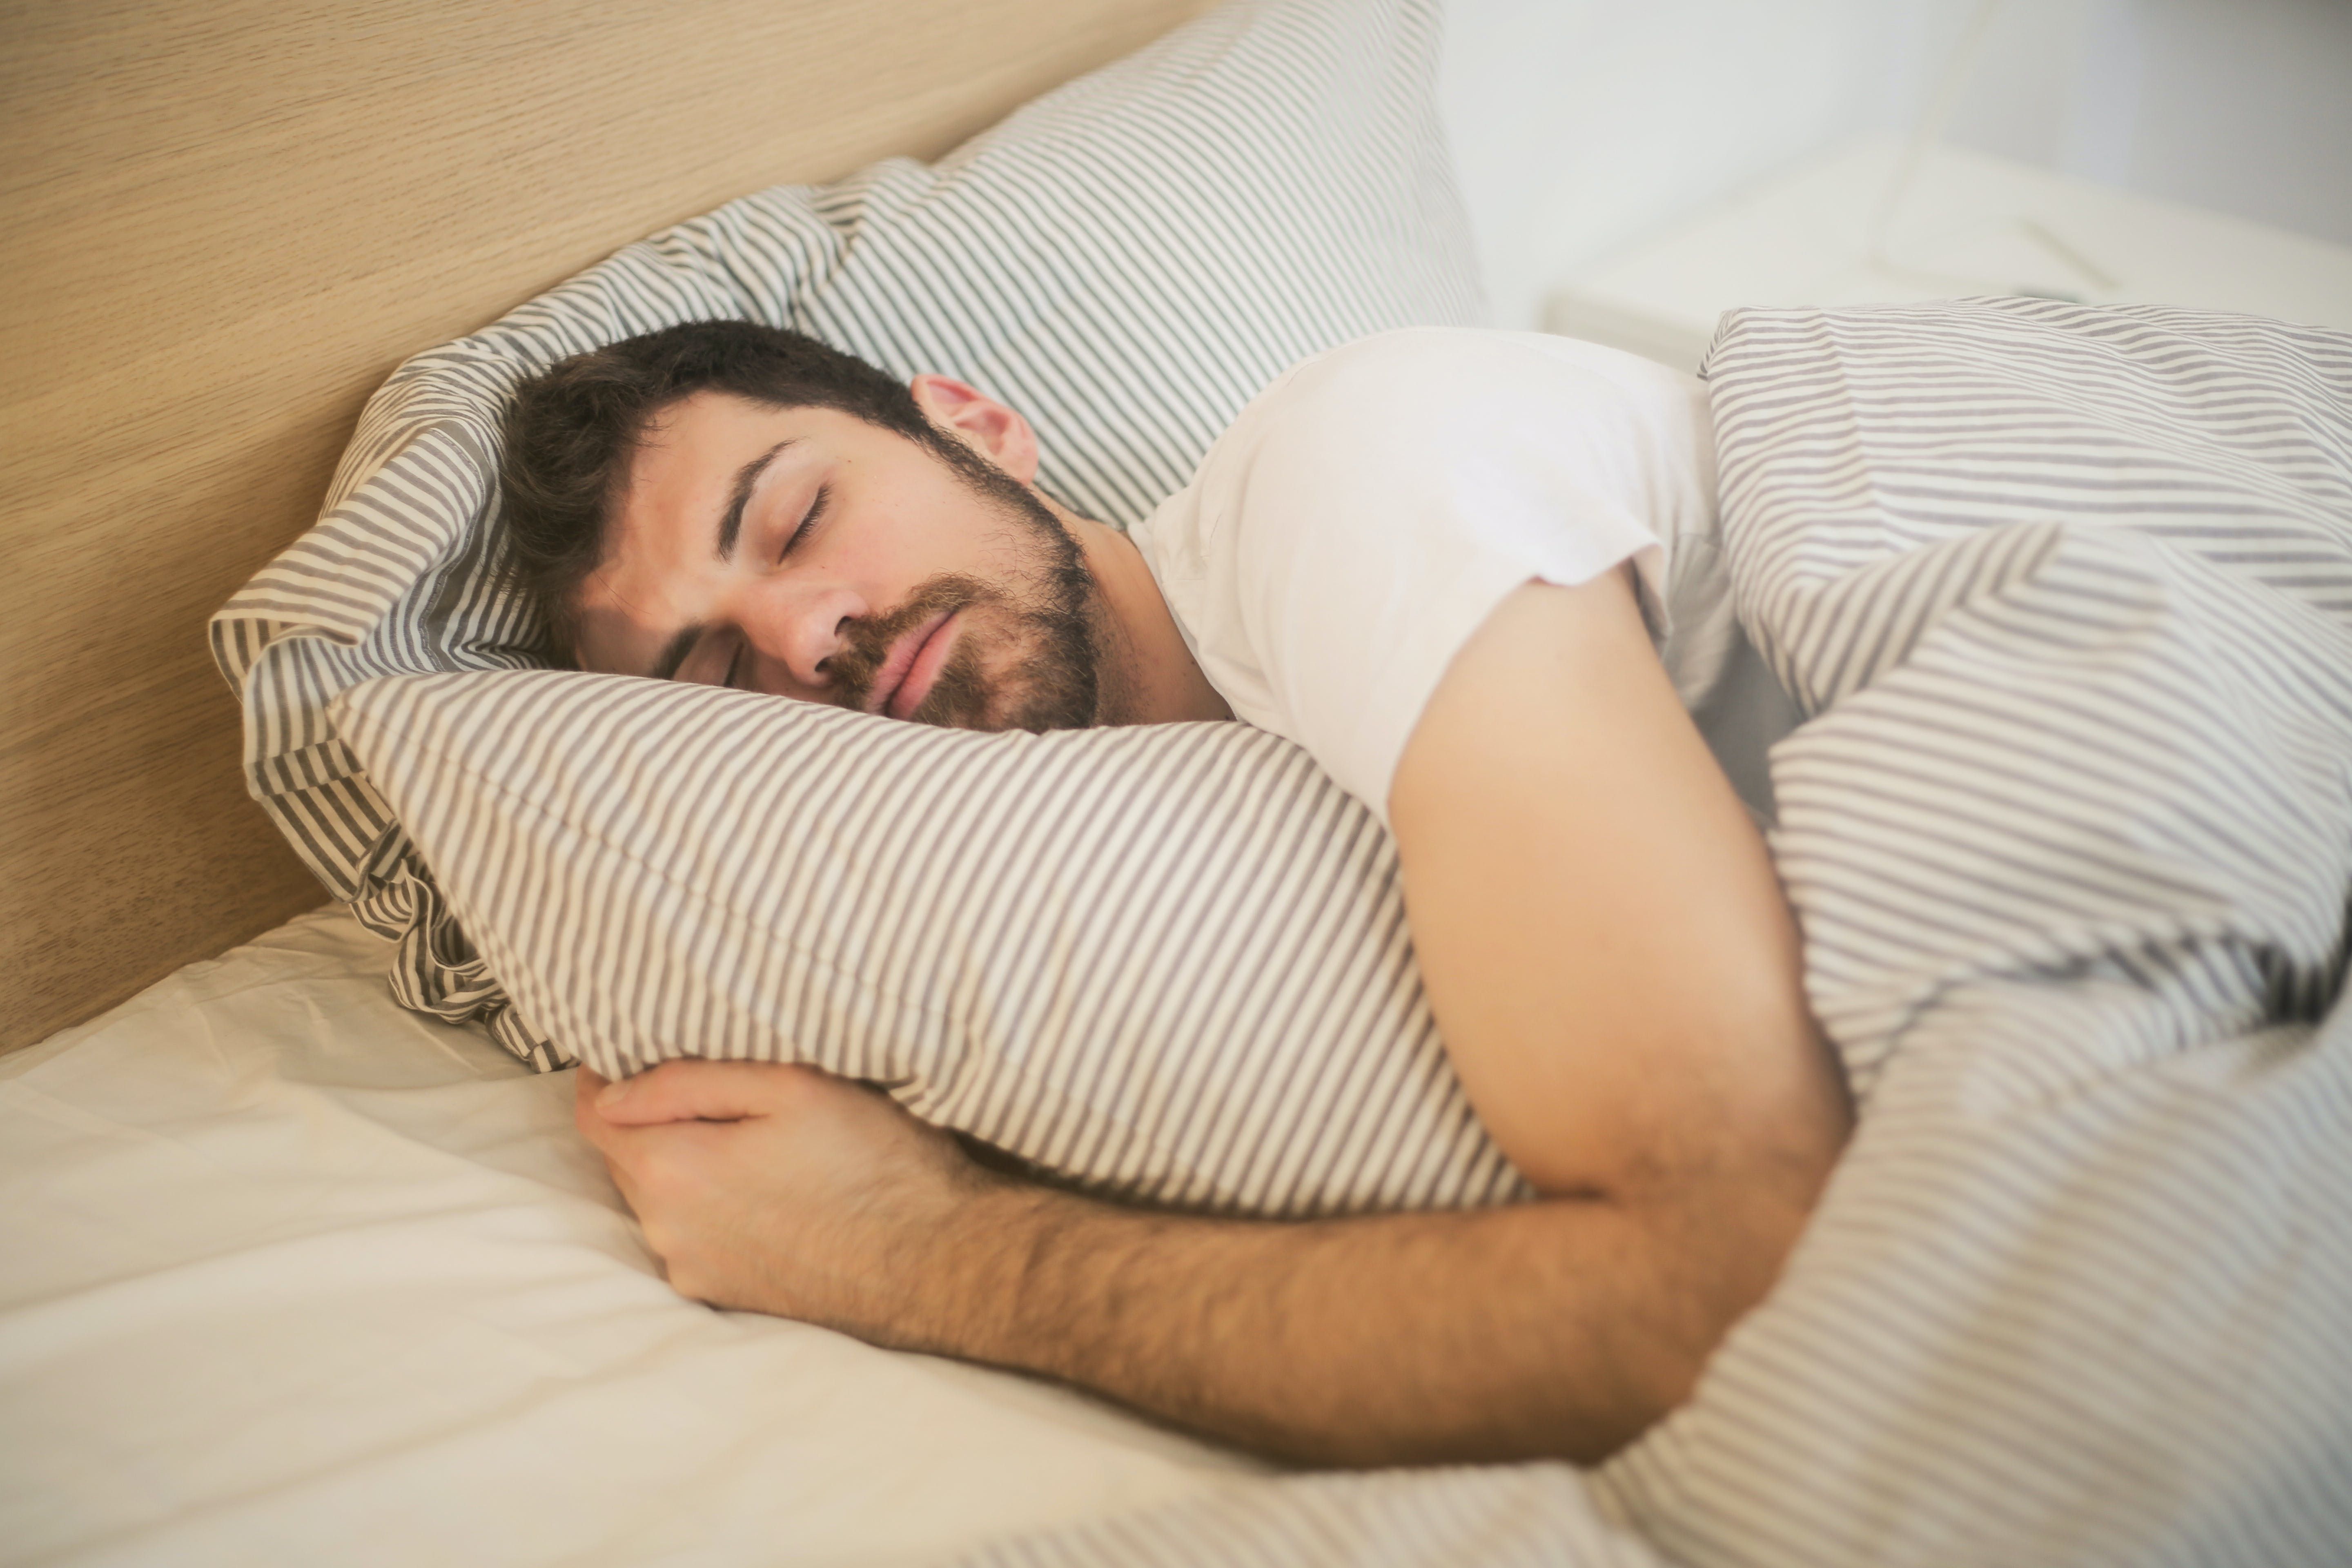 Поза для сна влияет на ваше здоровье